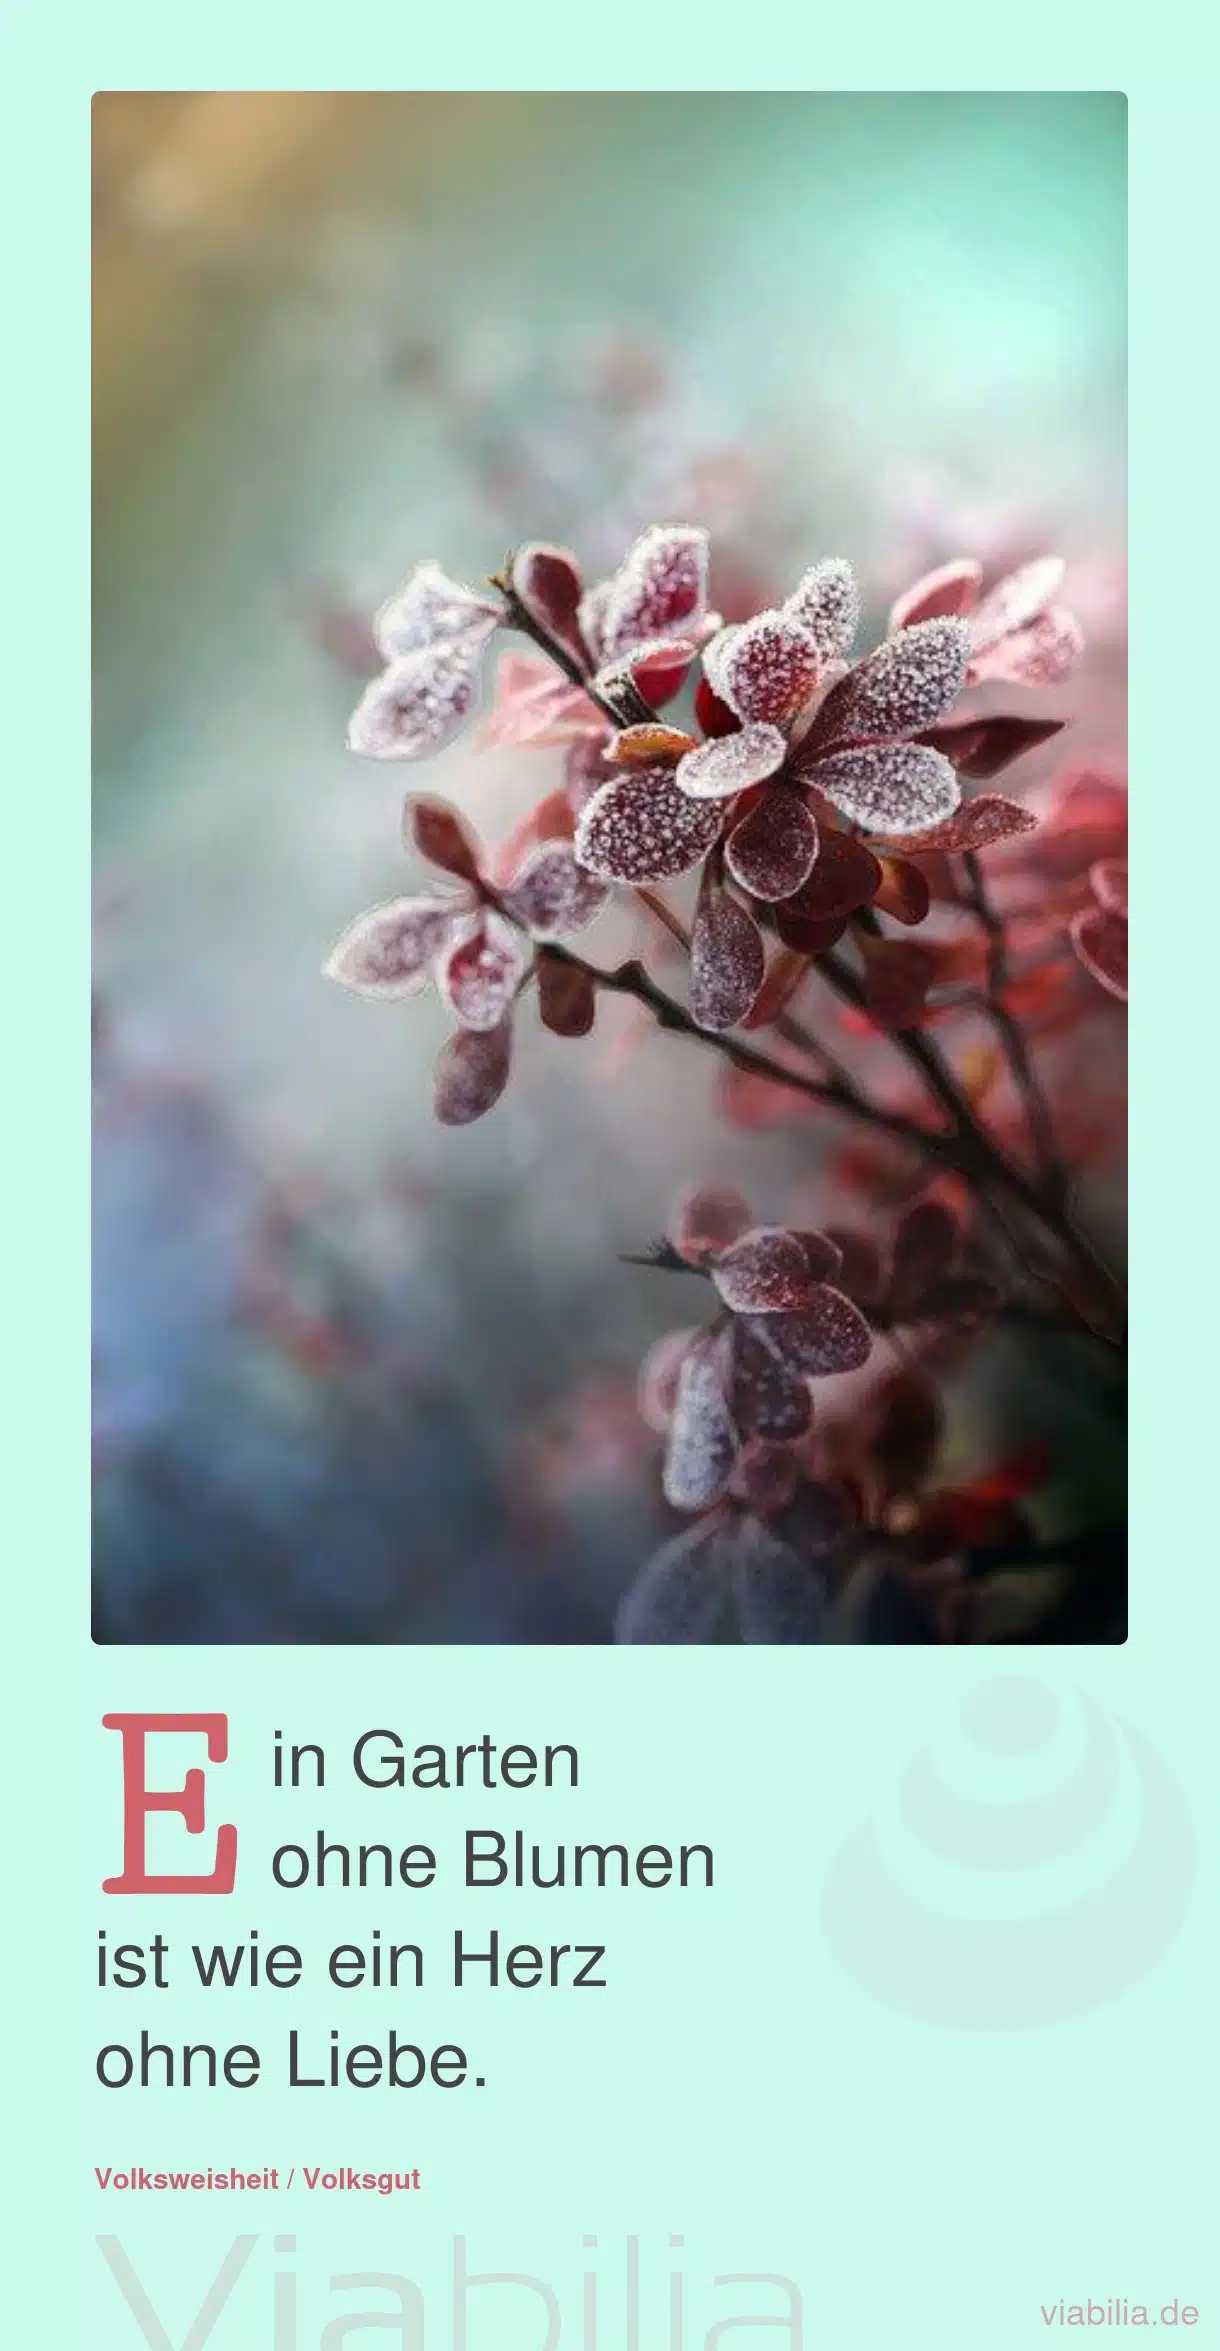 Gartenspruch bzw. Metapher über Blumen und Herz